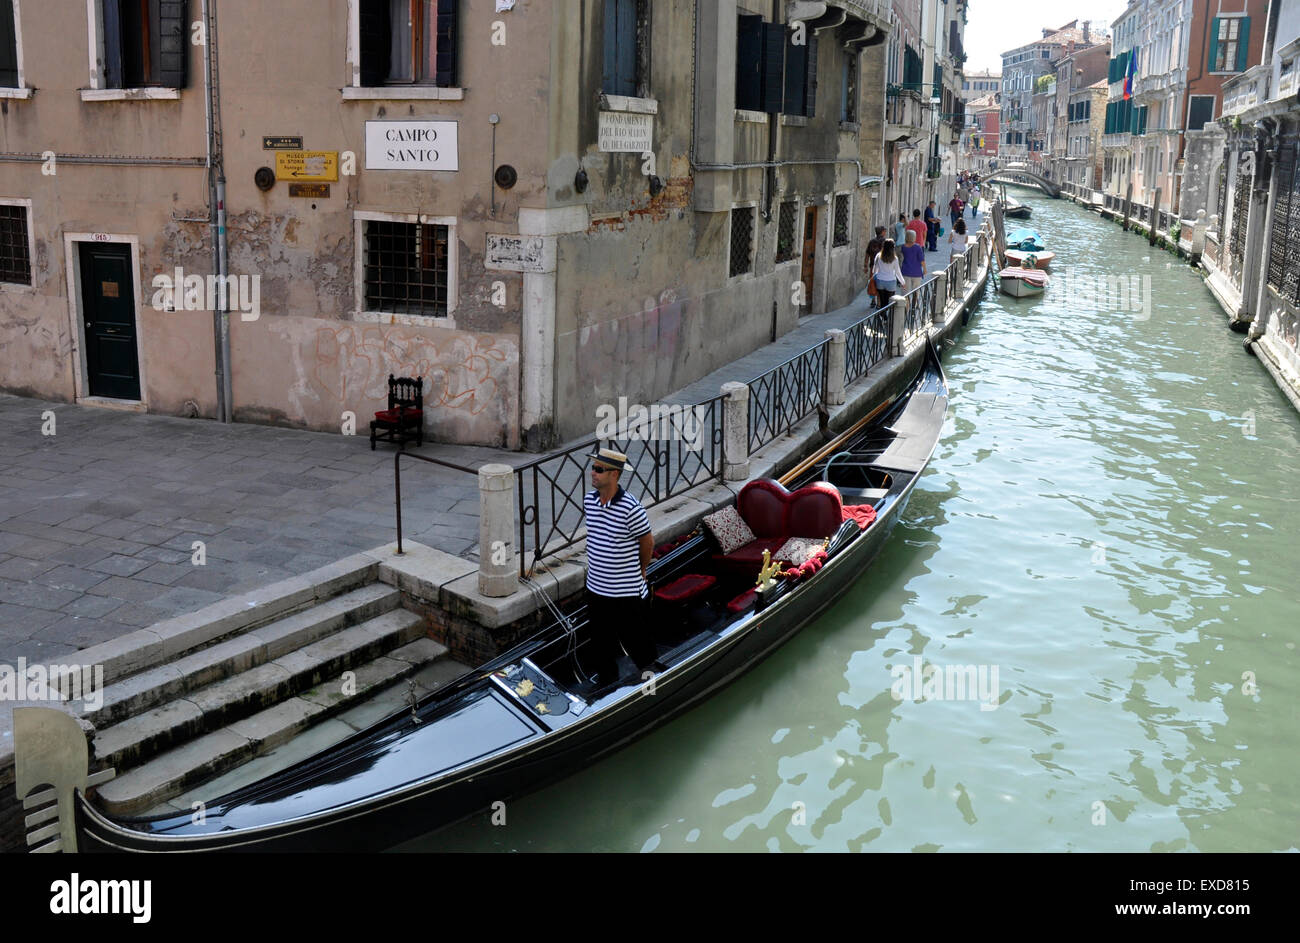 Italie Venise Cannaregio région canal au Campo Santo de Strada Nova - gondolier vantant aux touristes - la lumière du soleil et les ombres Banque D'Images